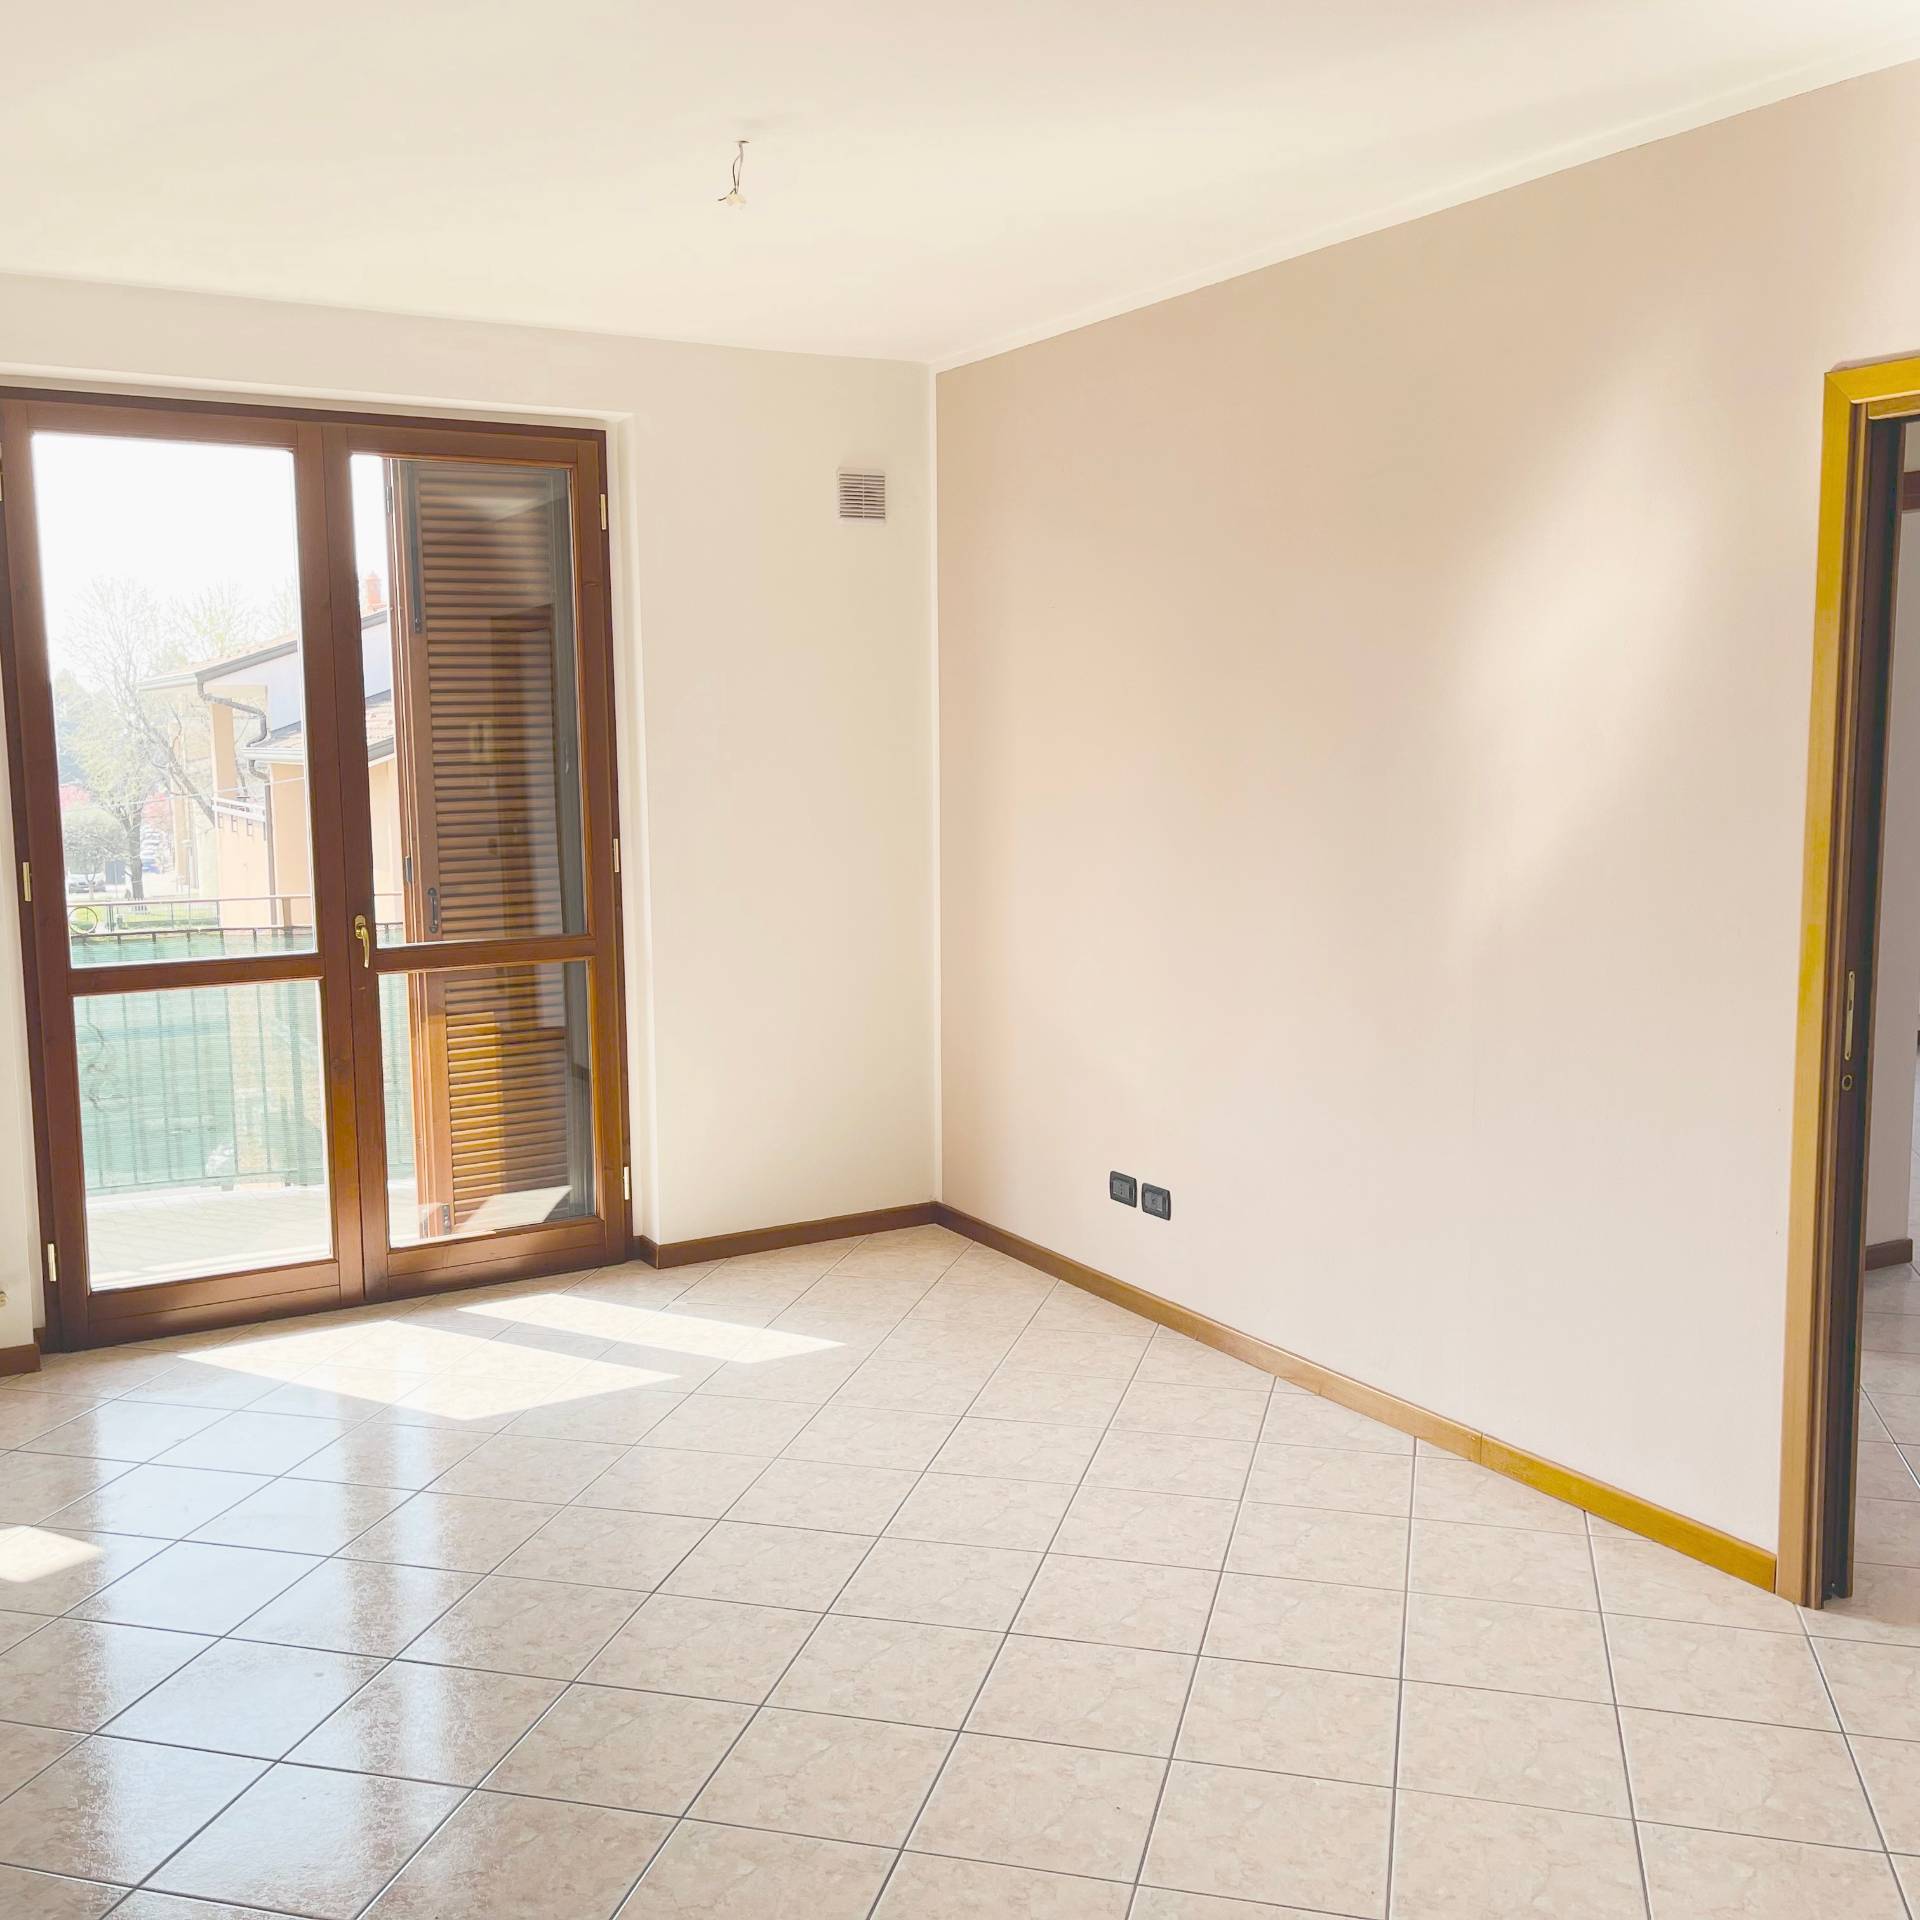 Appartamento in affitto a Calusco d'Adda, 3 locali, prezzo € 680 | PortaleAgenzieImmobiliari.it